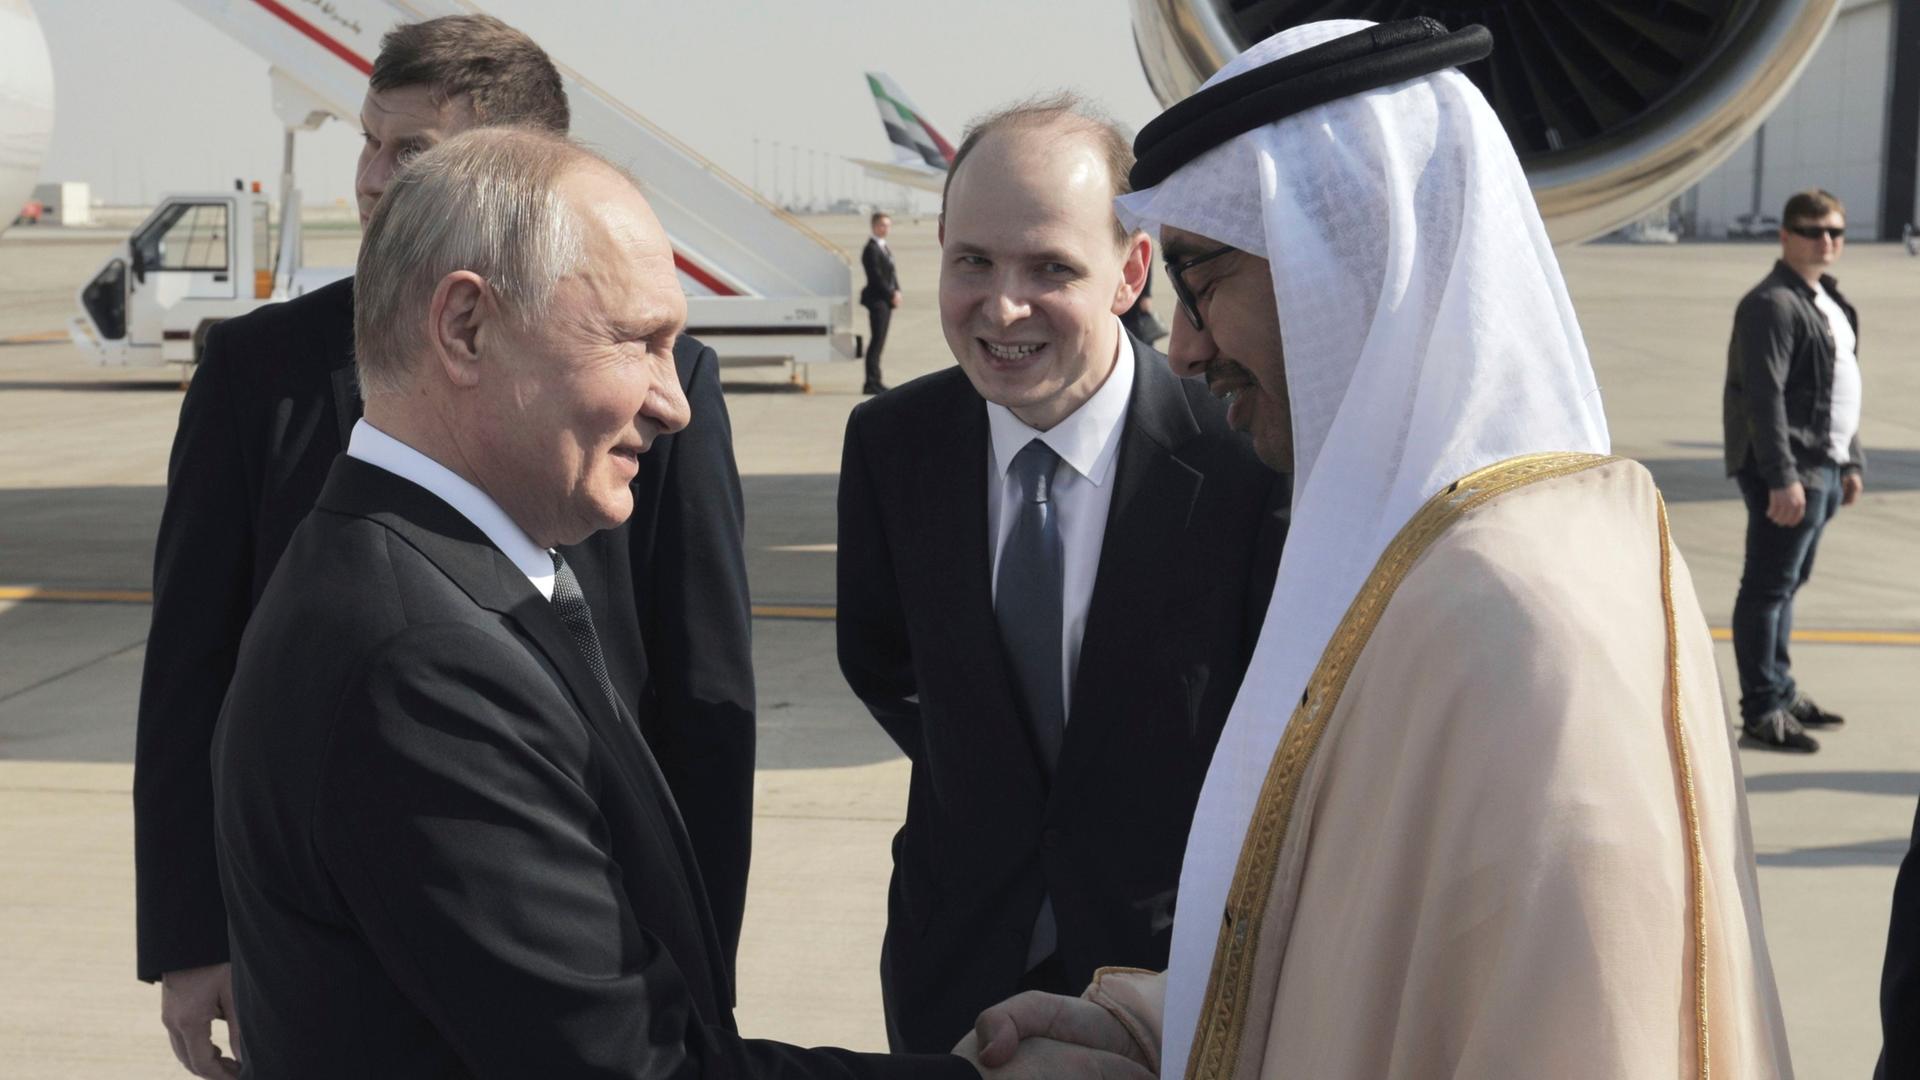 Vereinigte Arabische Emirate, Abu Dhabi: Abdullah bin Zayid Al Nahyan (r), Außenminister der Vereinigten Arabischen Emirate, der Wladimir Putin, Präsident von Russland, bei seiner Ankunft am internationalen Flughafen in Abu Dhabi begrüßt.